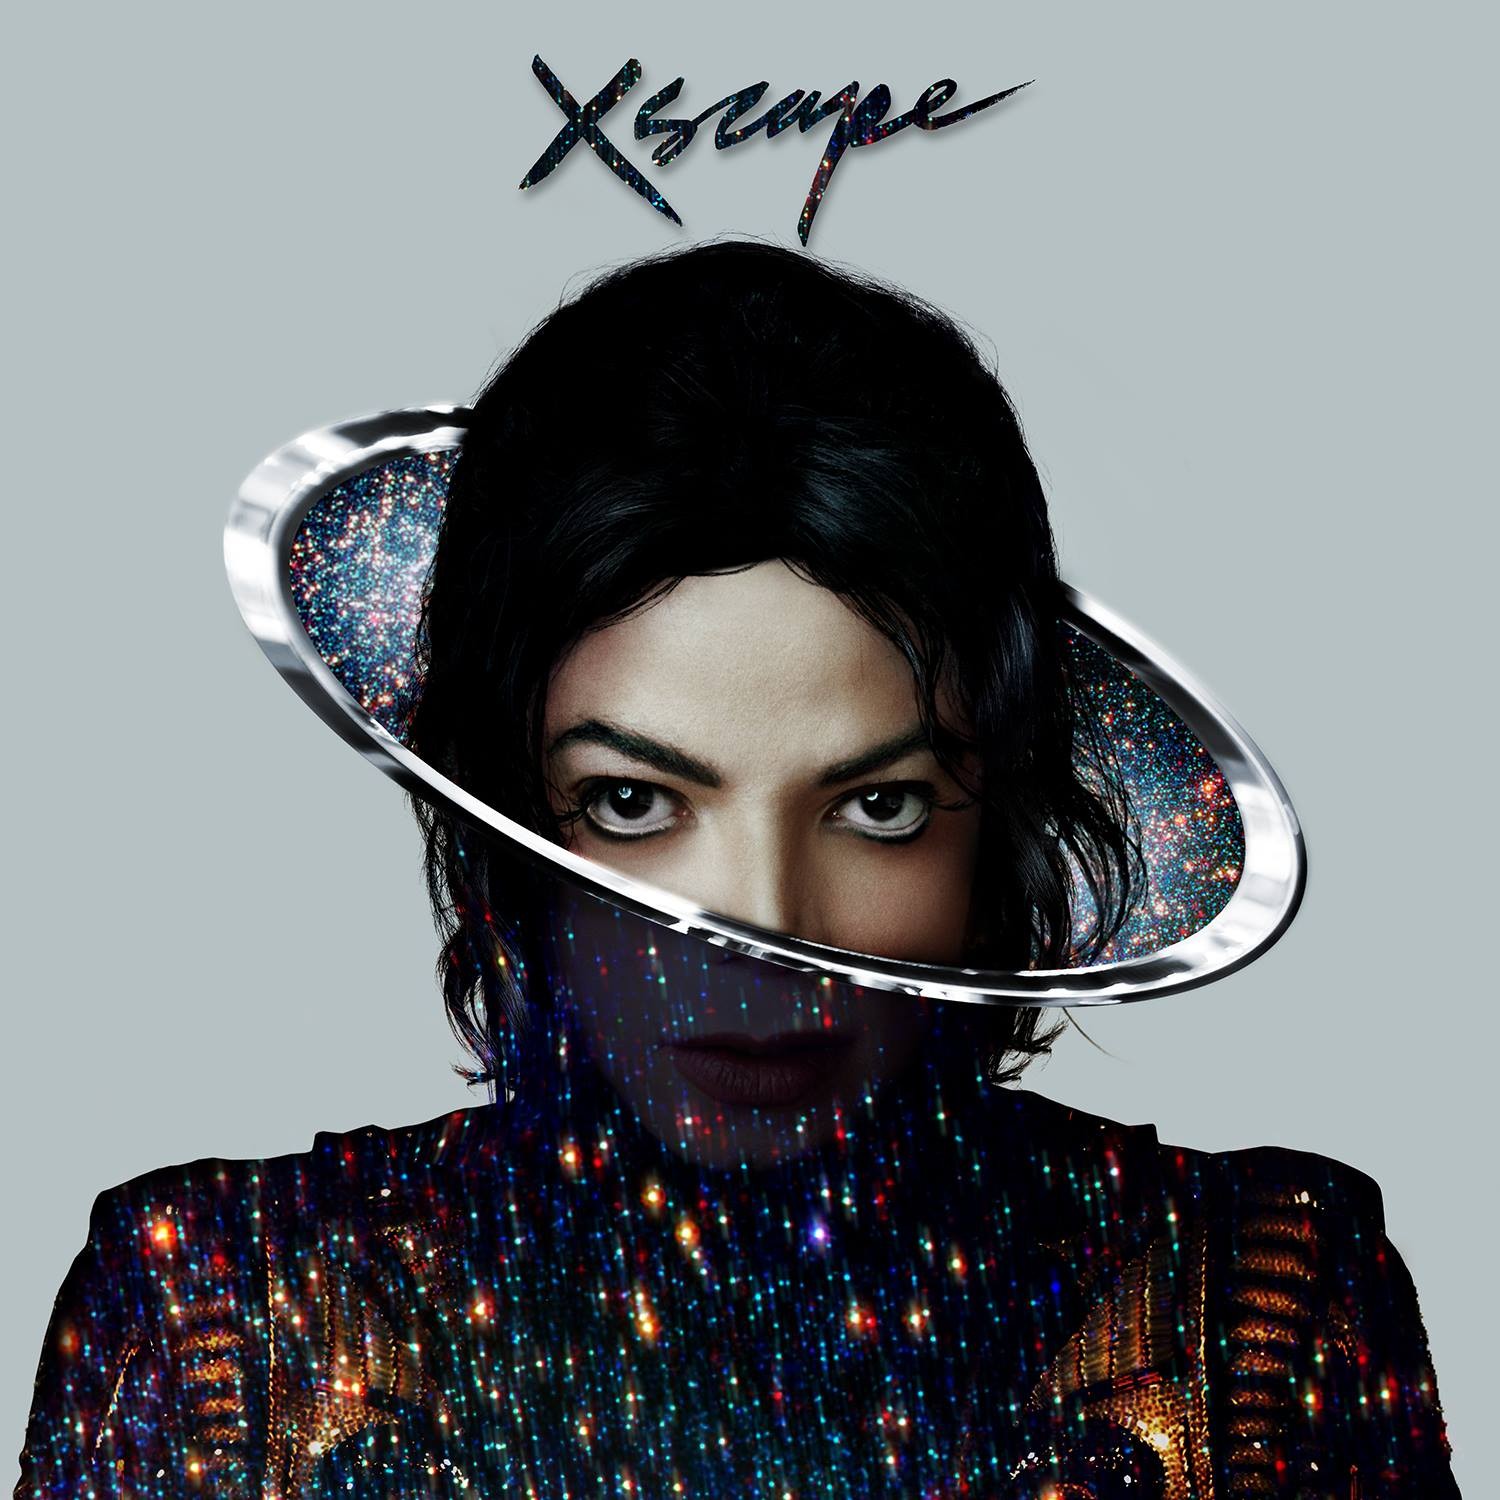 Michael Jackson na capa de 'Xscape' (Foto: Divulgação)